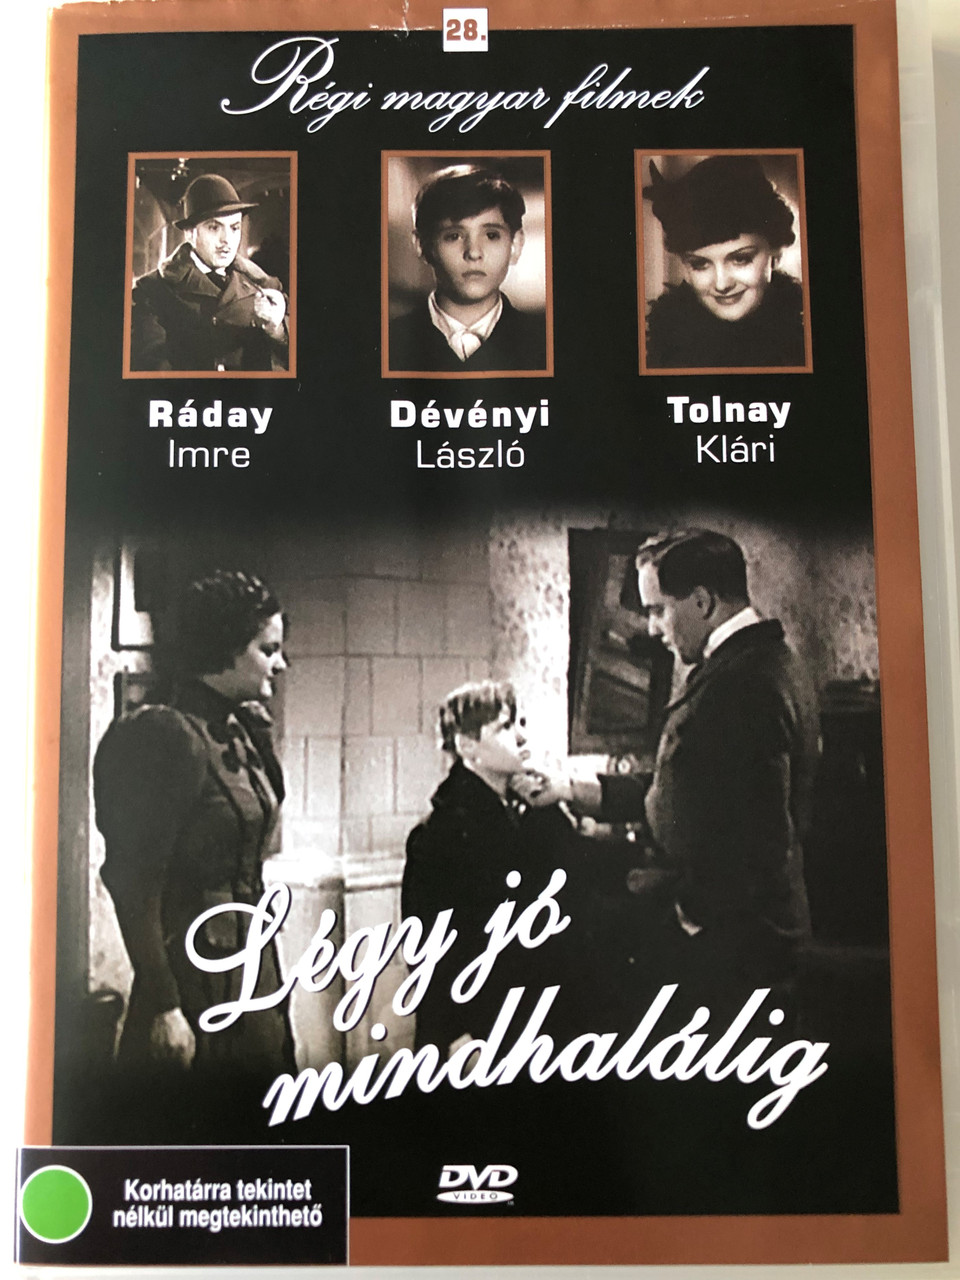 Légy jó mindhalálig DVD 1936 / Directed by Székely István AKA Steve Sekely  / Starring: Dévényi László, Rózsahegyi